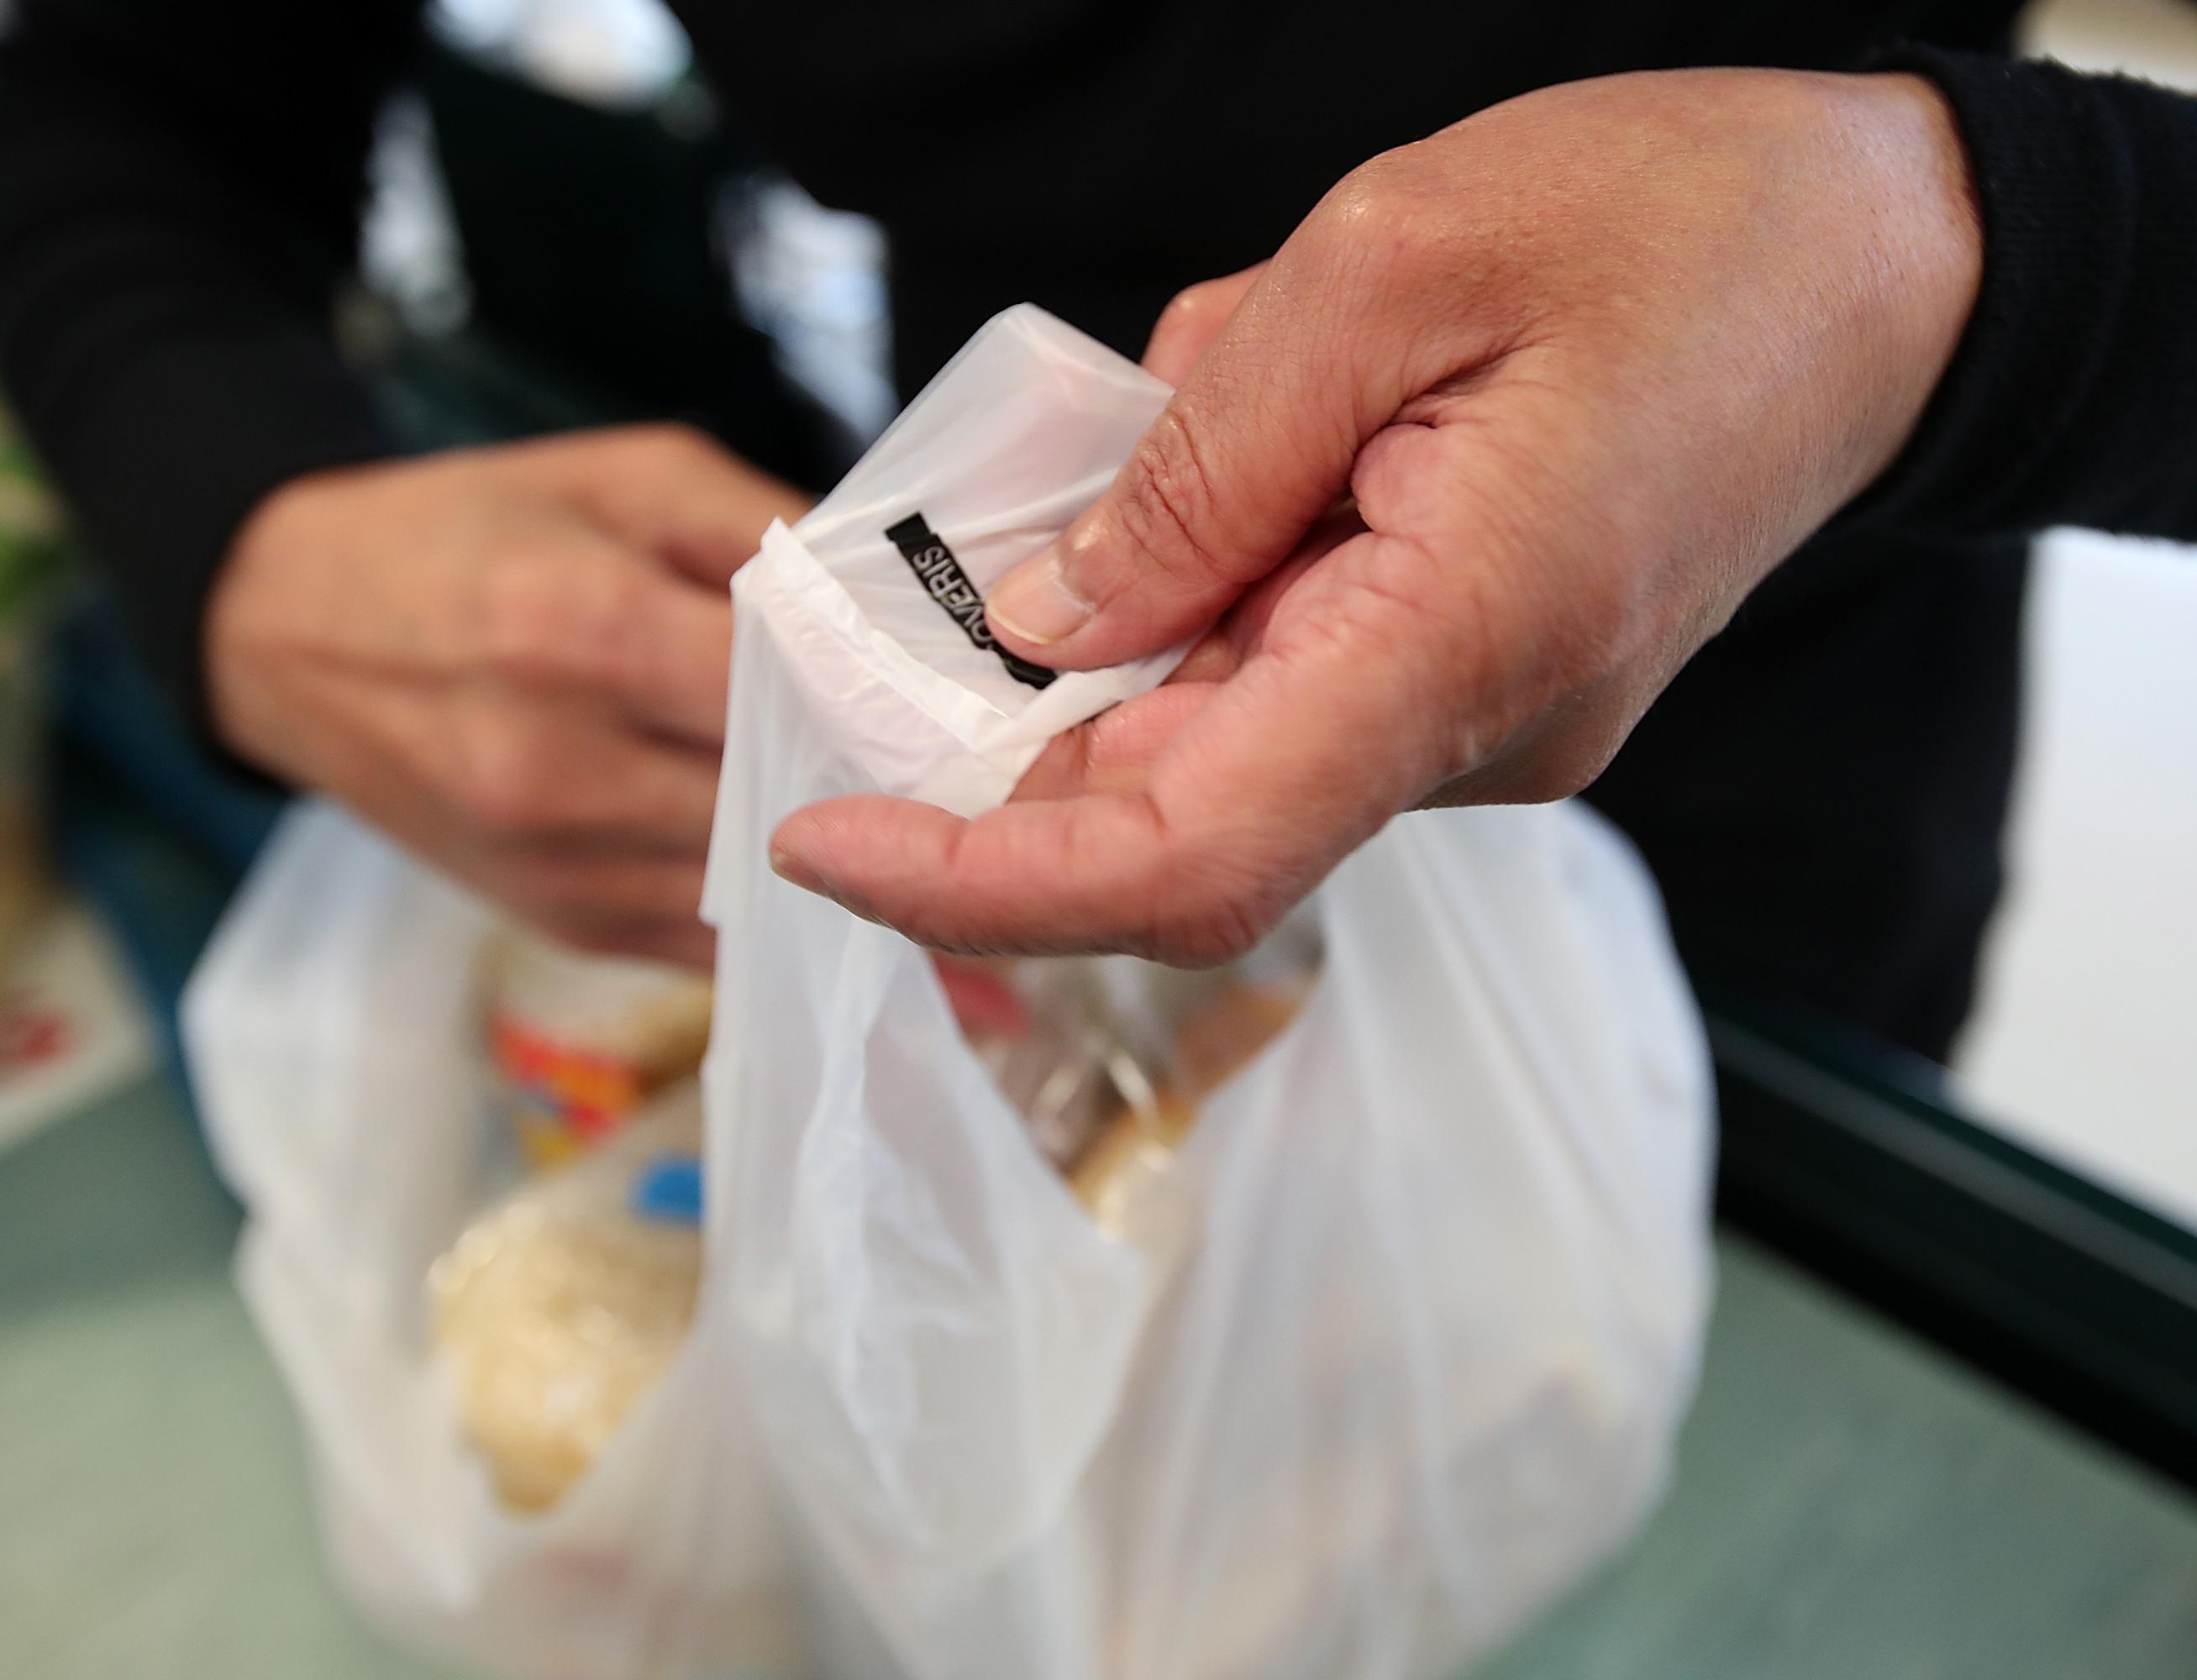 Новая Зеландия запретила пластиковые пакеты